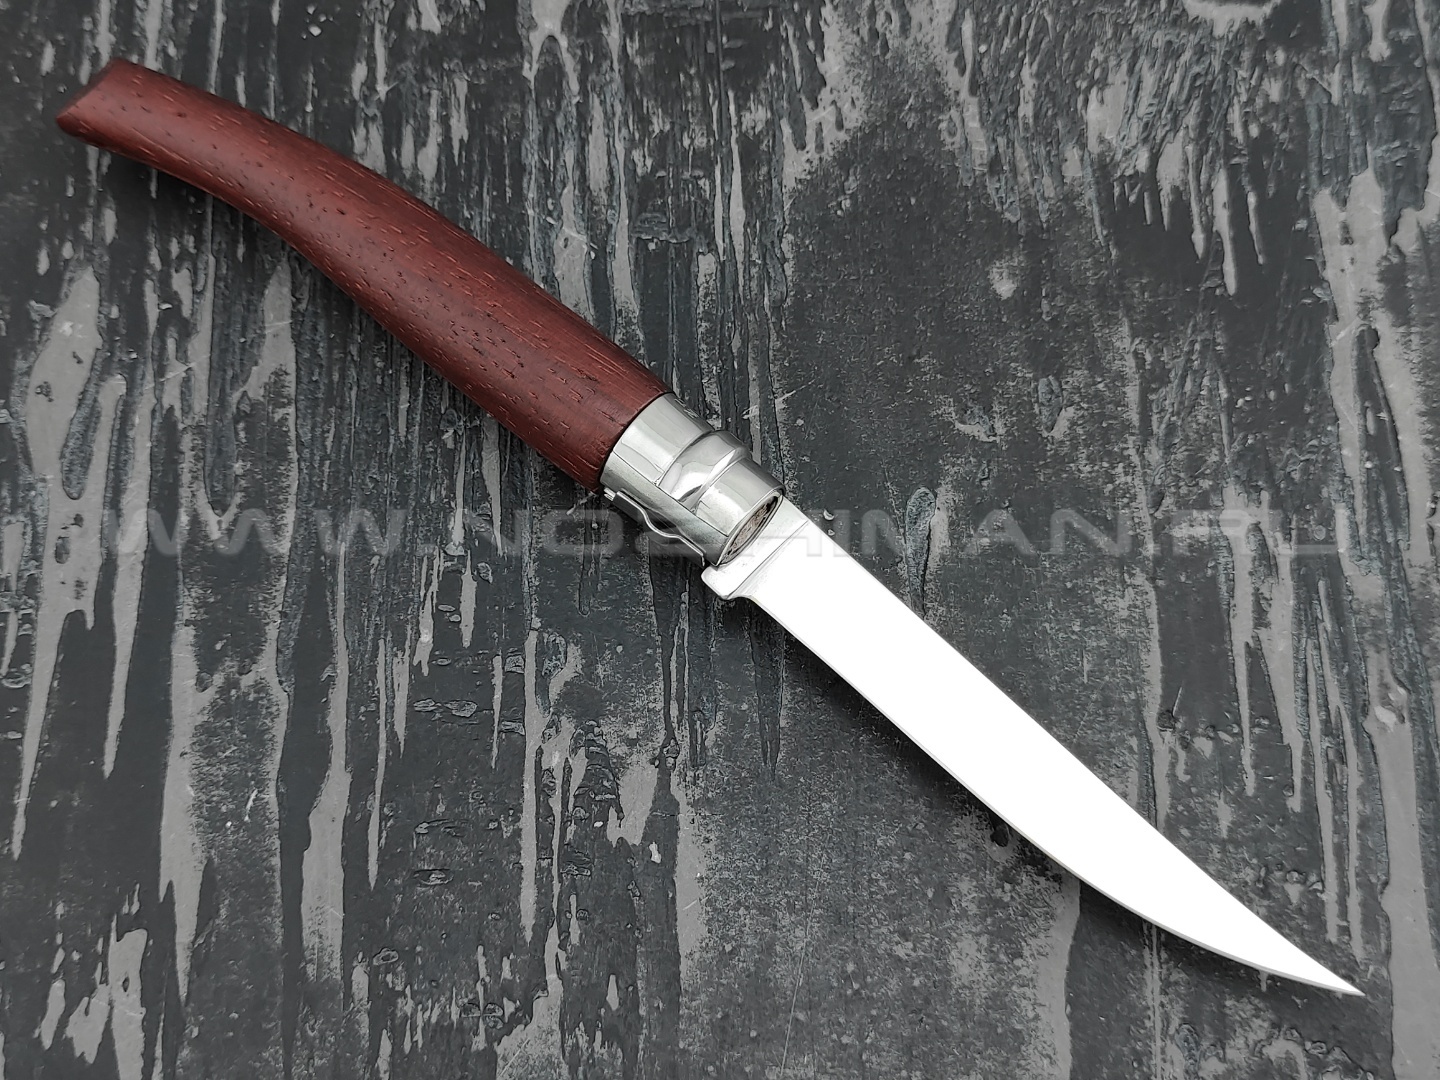 Нож Opinel складной филейный №10 000013 сталь Sandvik 12C27, рукоять бубинга